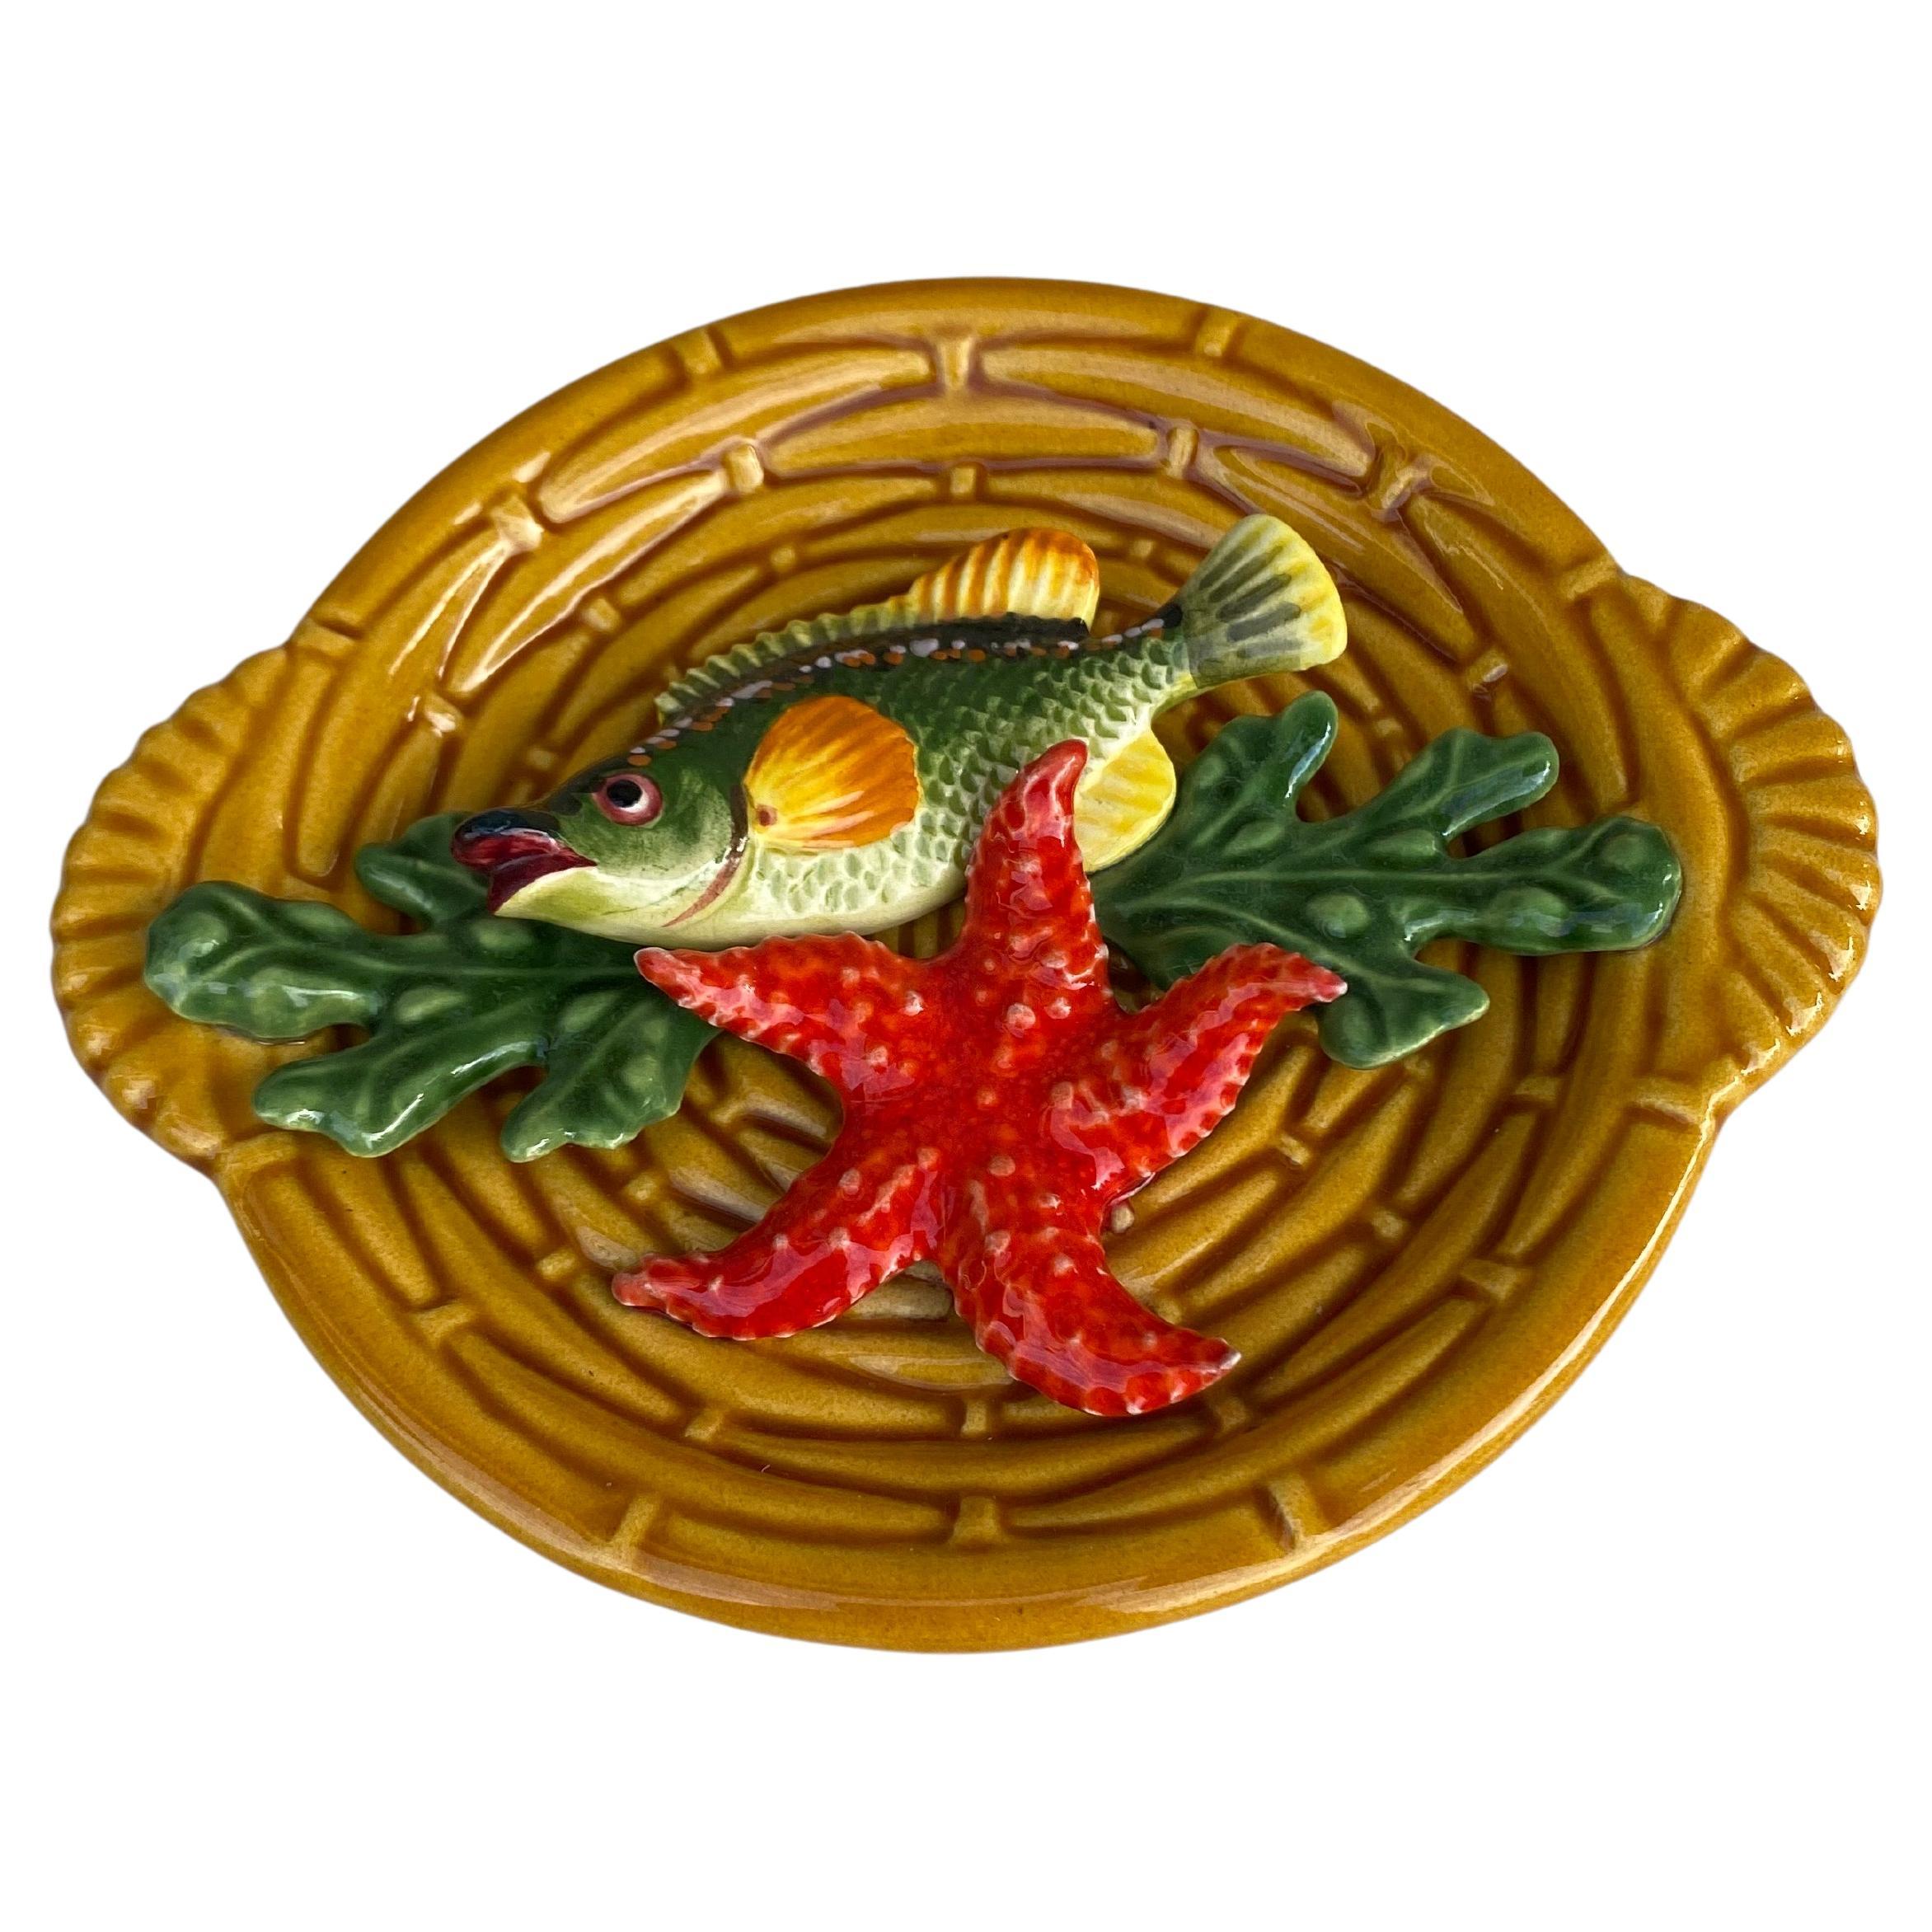 Petit plat en majolique représentant des animaux marins Vallauris, vers 1950.
Haut relief de poissons, algues, étoiles de mer.
Style nautique.
Diamètre / 7.5 par 6